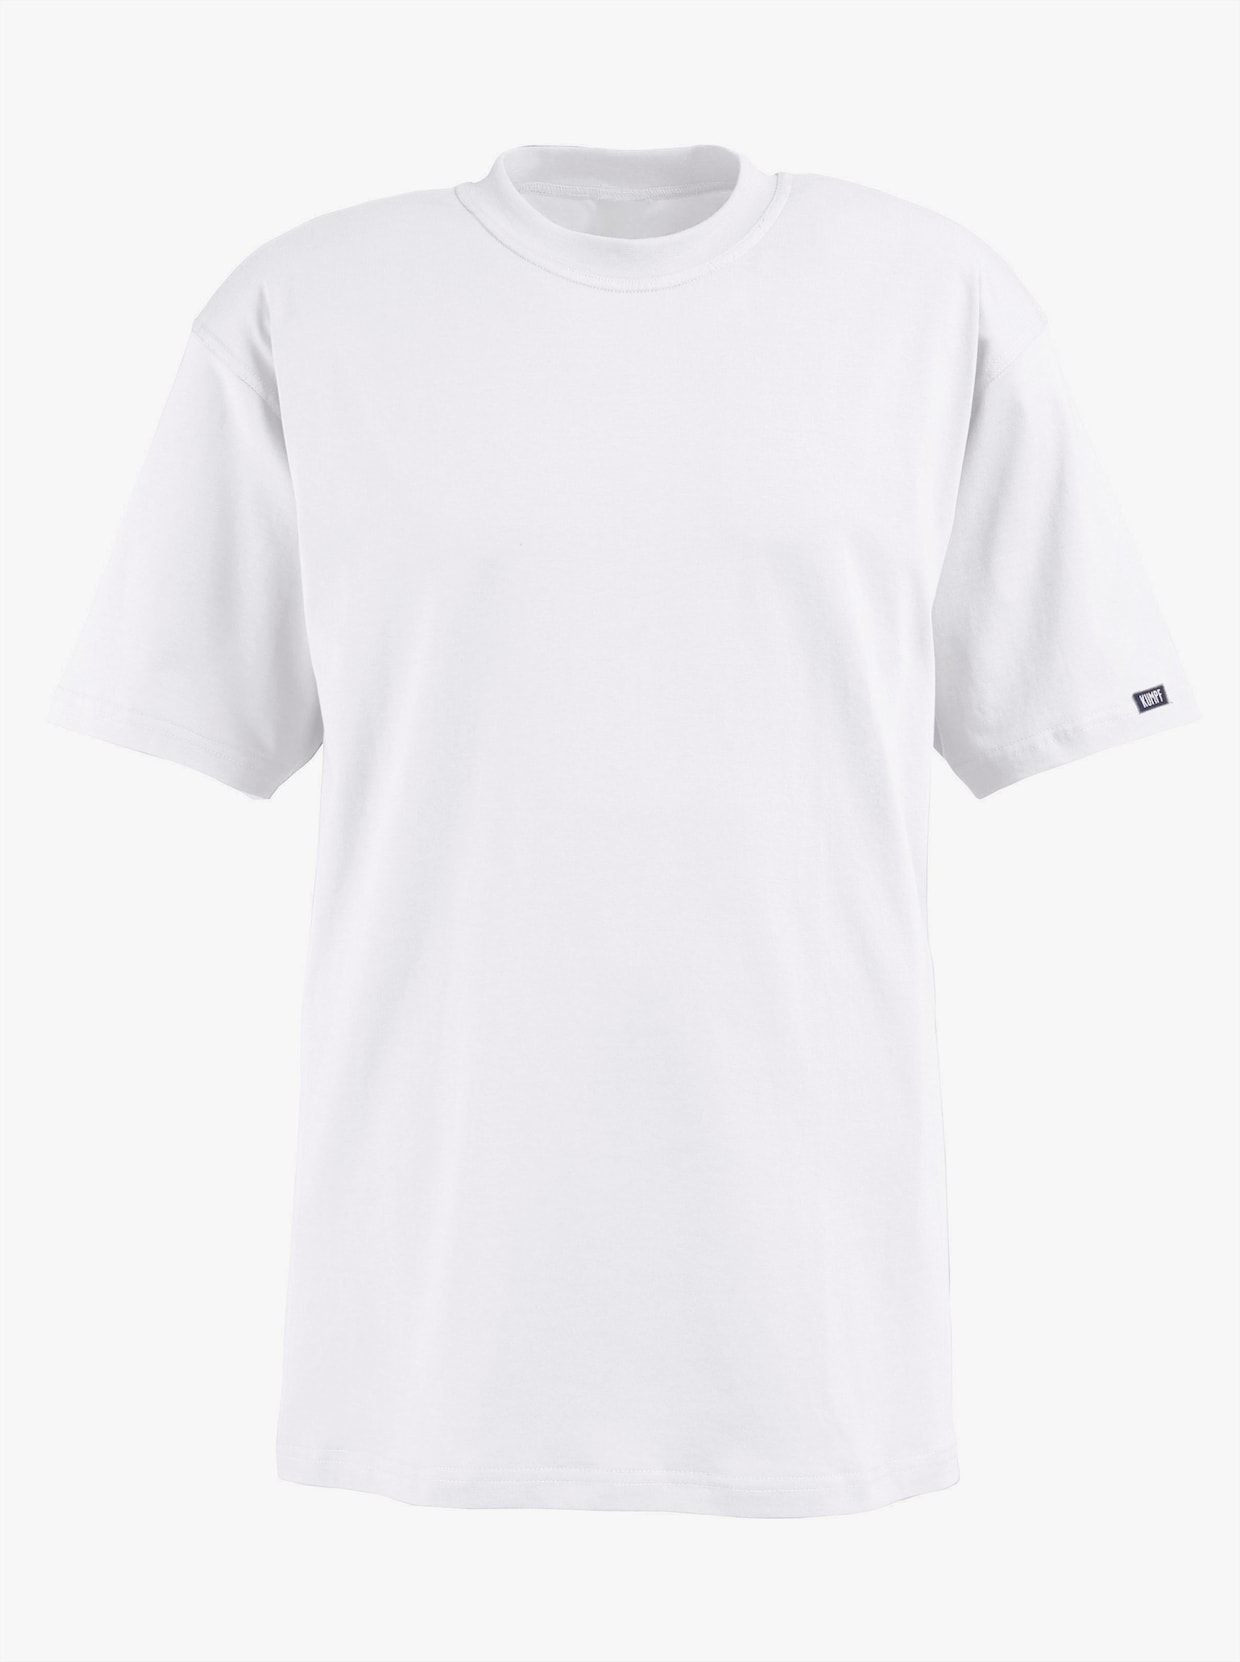 Kumpf Shirt - 2 Stück weiß